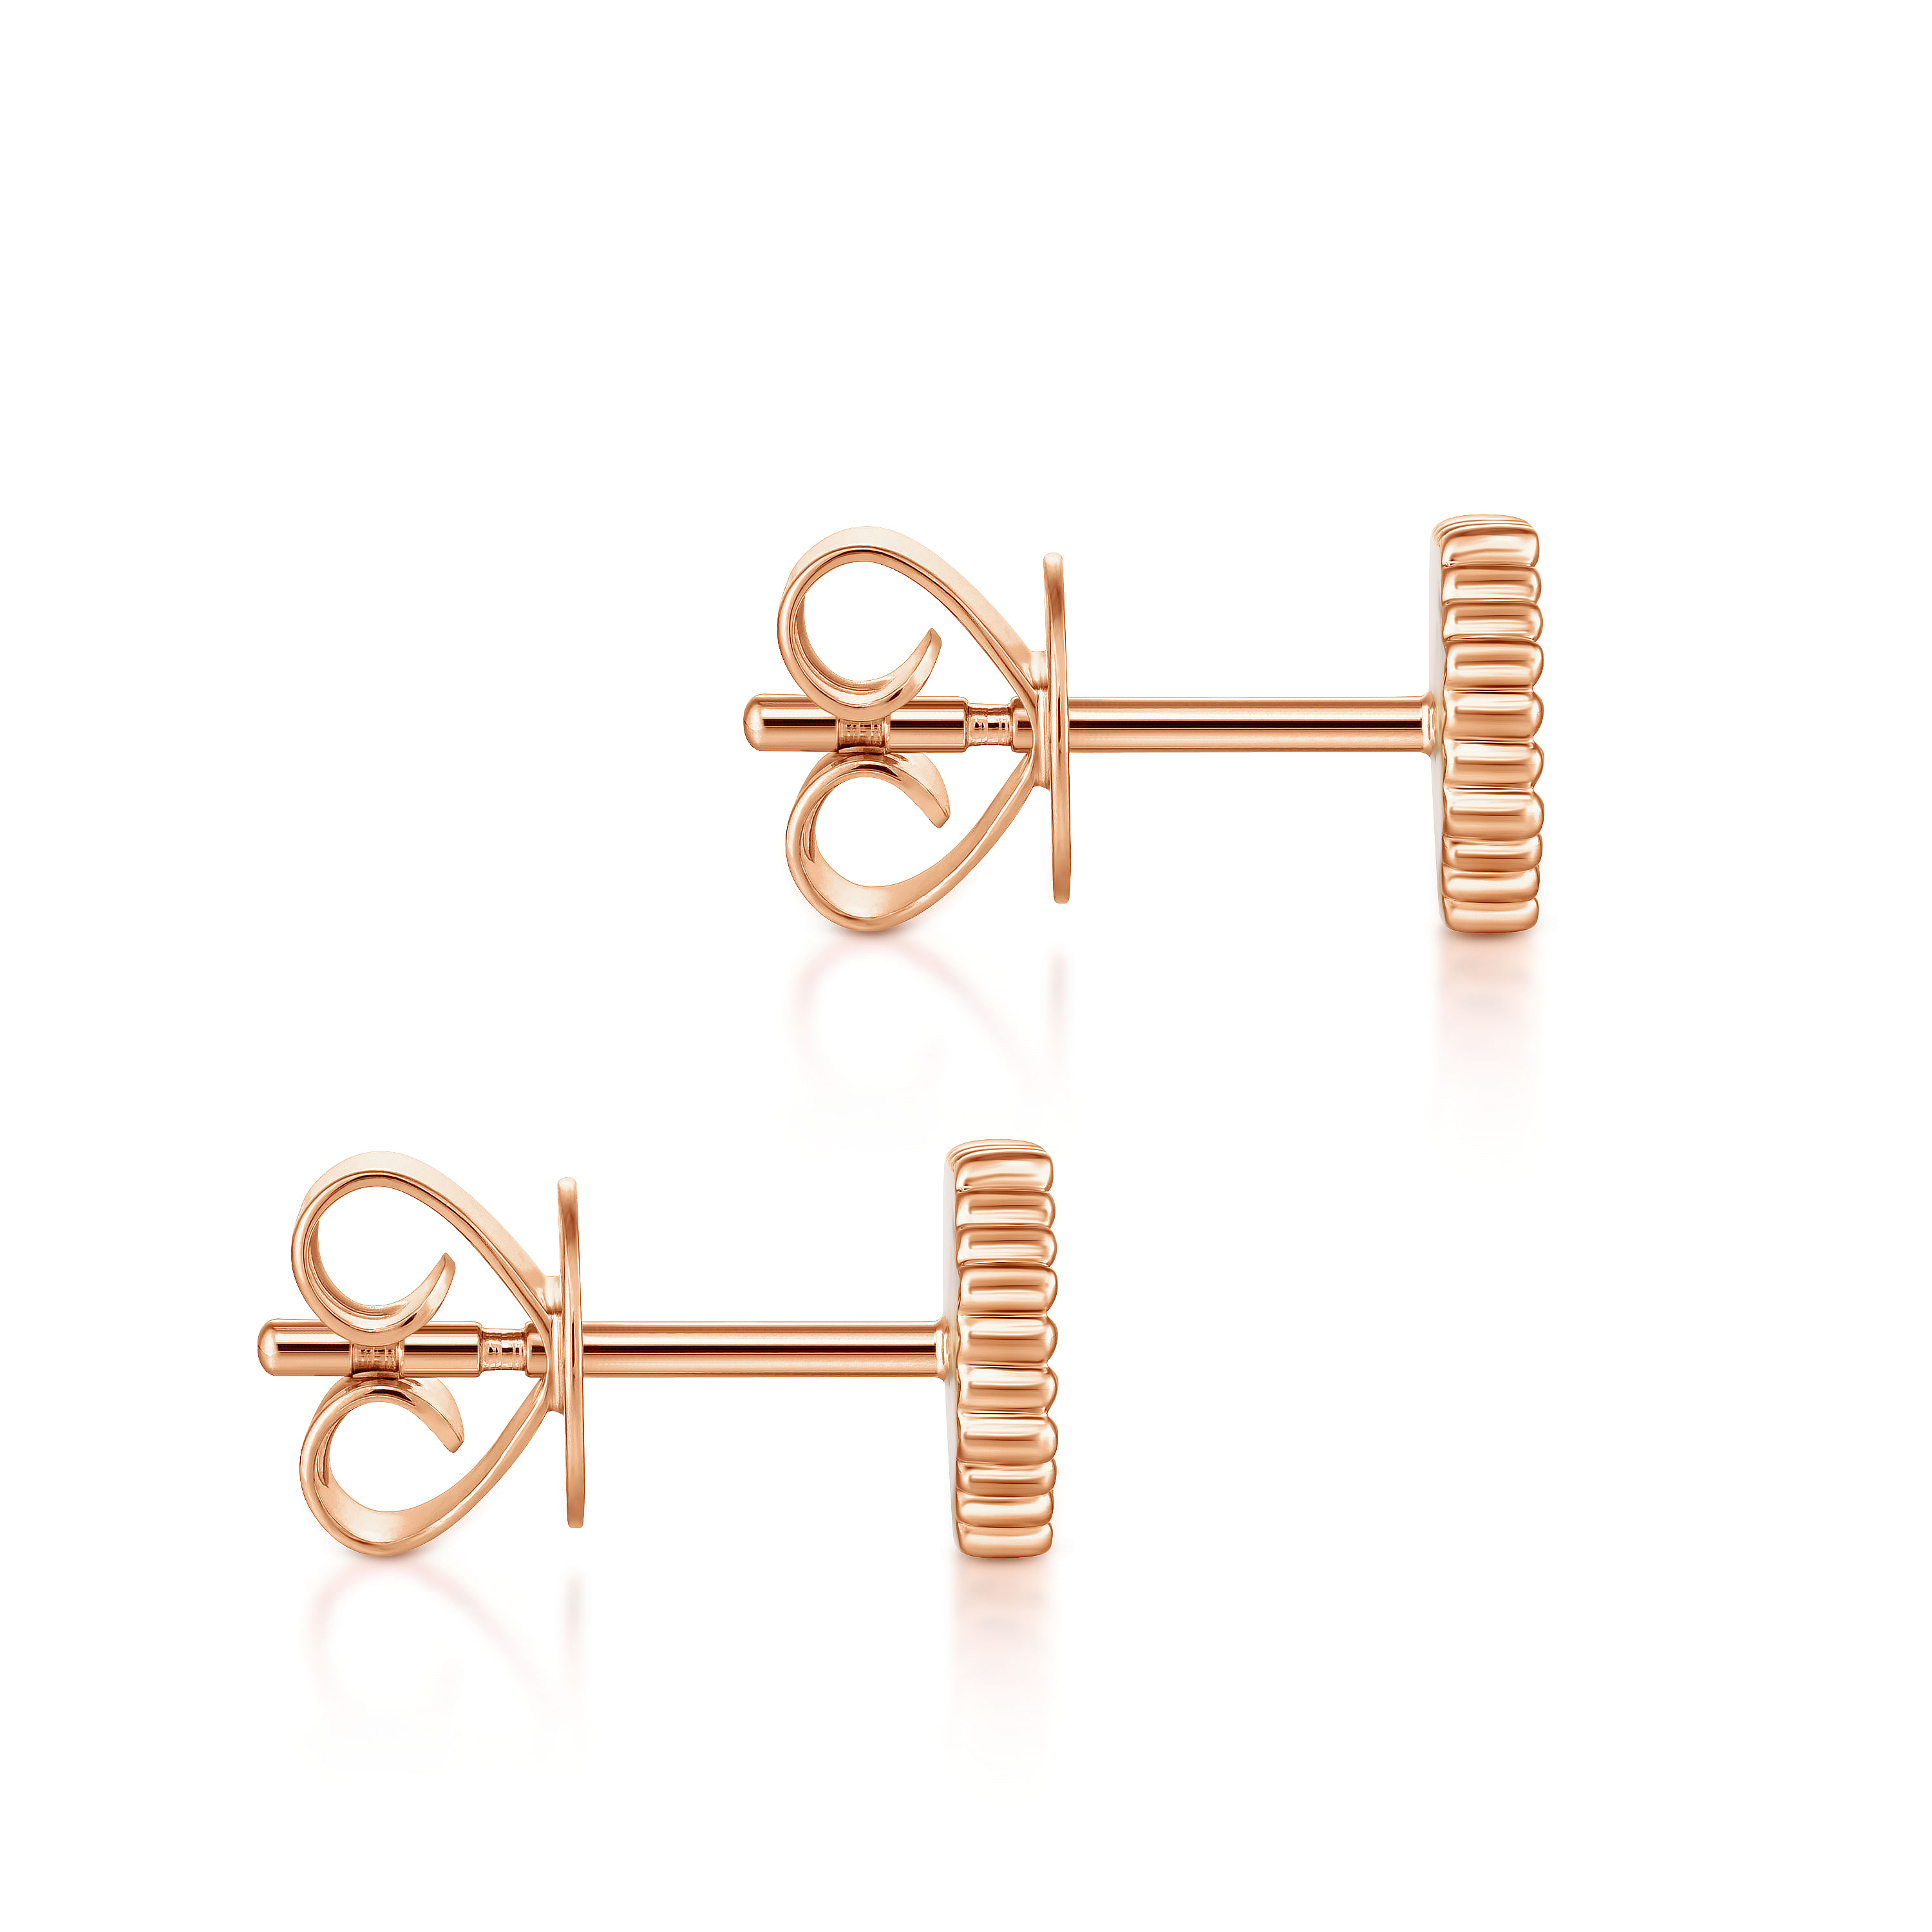 14K Rose Gold Octagonal Pavé Diamond Cluster Stud Earrings